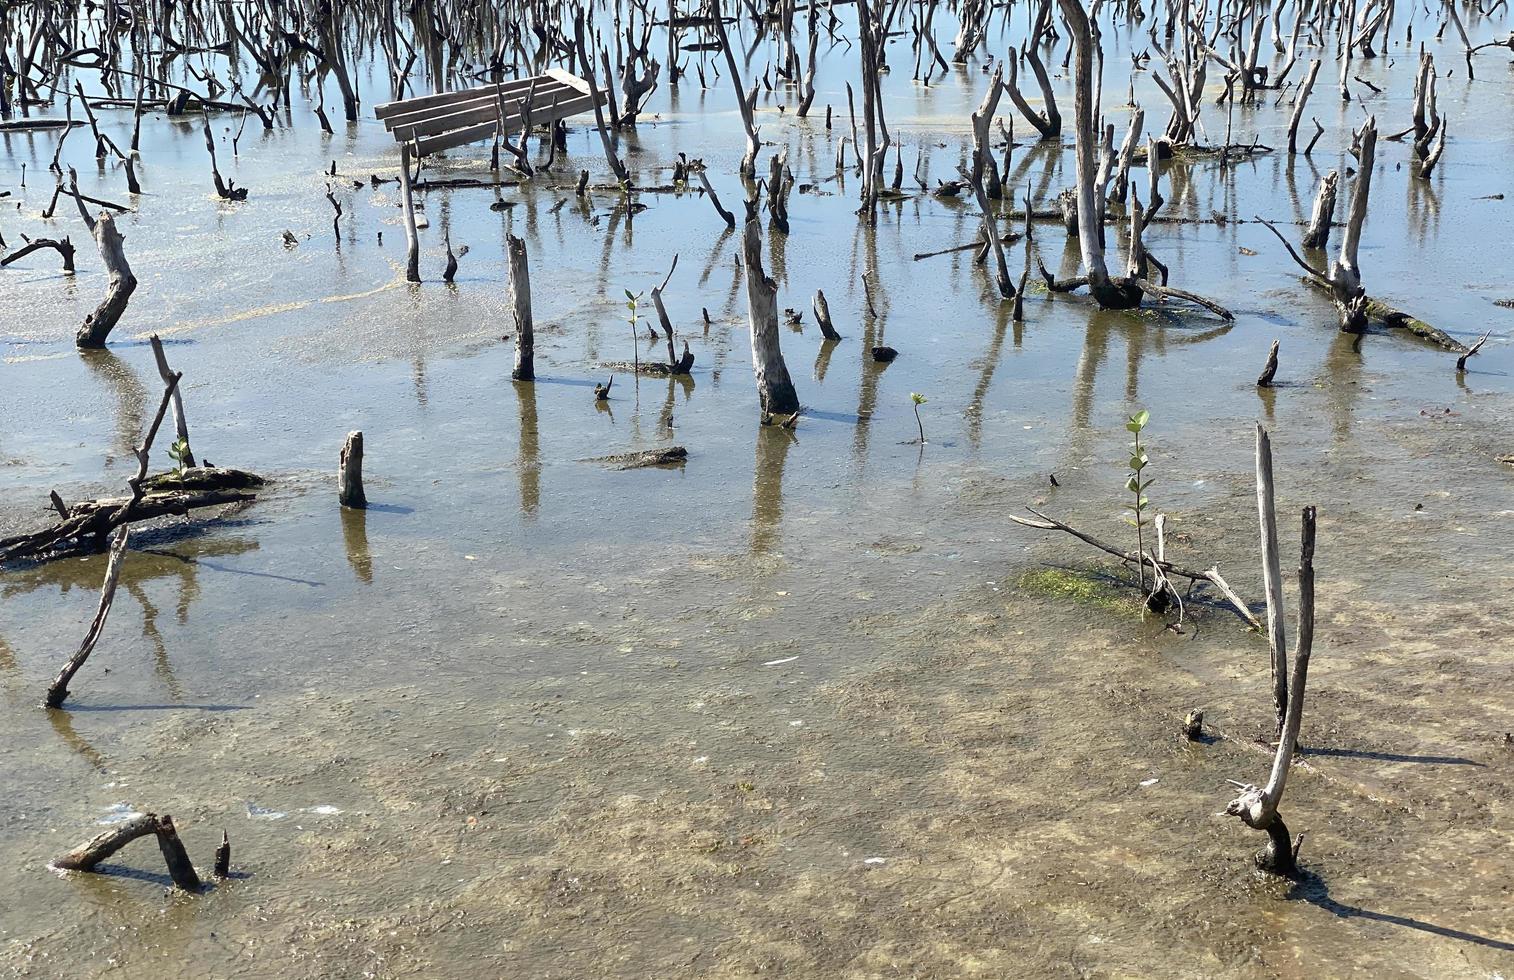 paisagem de floresta de mangue destruída, floresta de mangue destruída é um ecossistema que foi severamente degradado ou eliminado devido à urbanização e poluição. ajude a cuidar do manguezal. foto